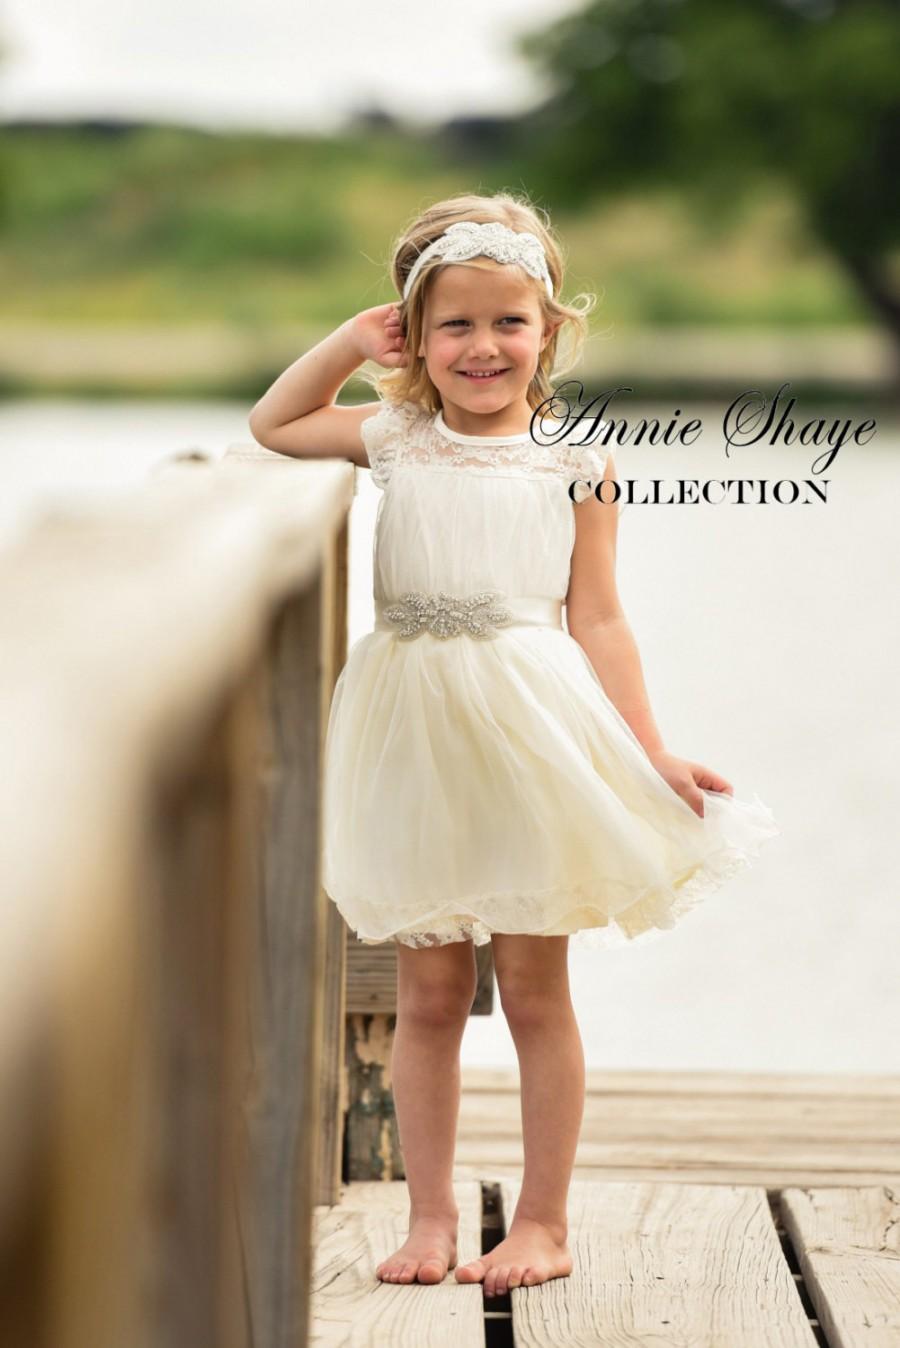 زفاف - Olivia Dress by Annie Shaye - flower girl dress ivory, lace toddler dress made for girls ages 9-12M,1t,2t,3t,4t,5,6,7,8, 9,10,11,12,13,14